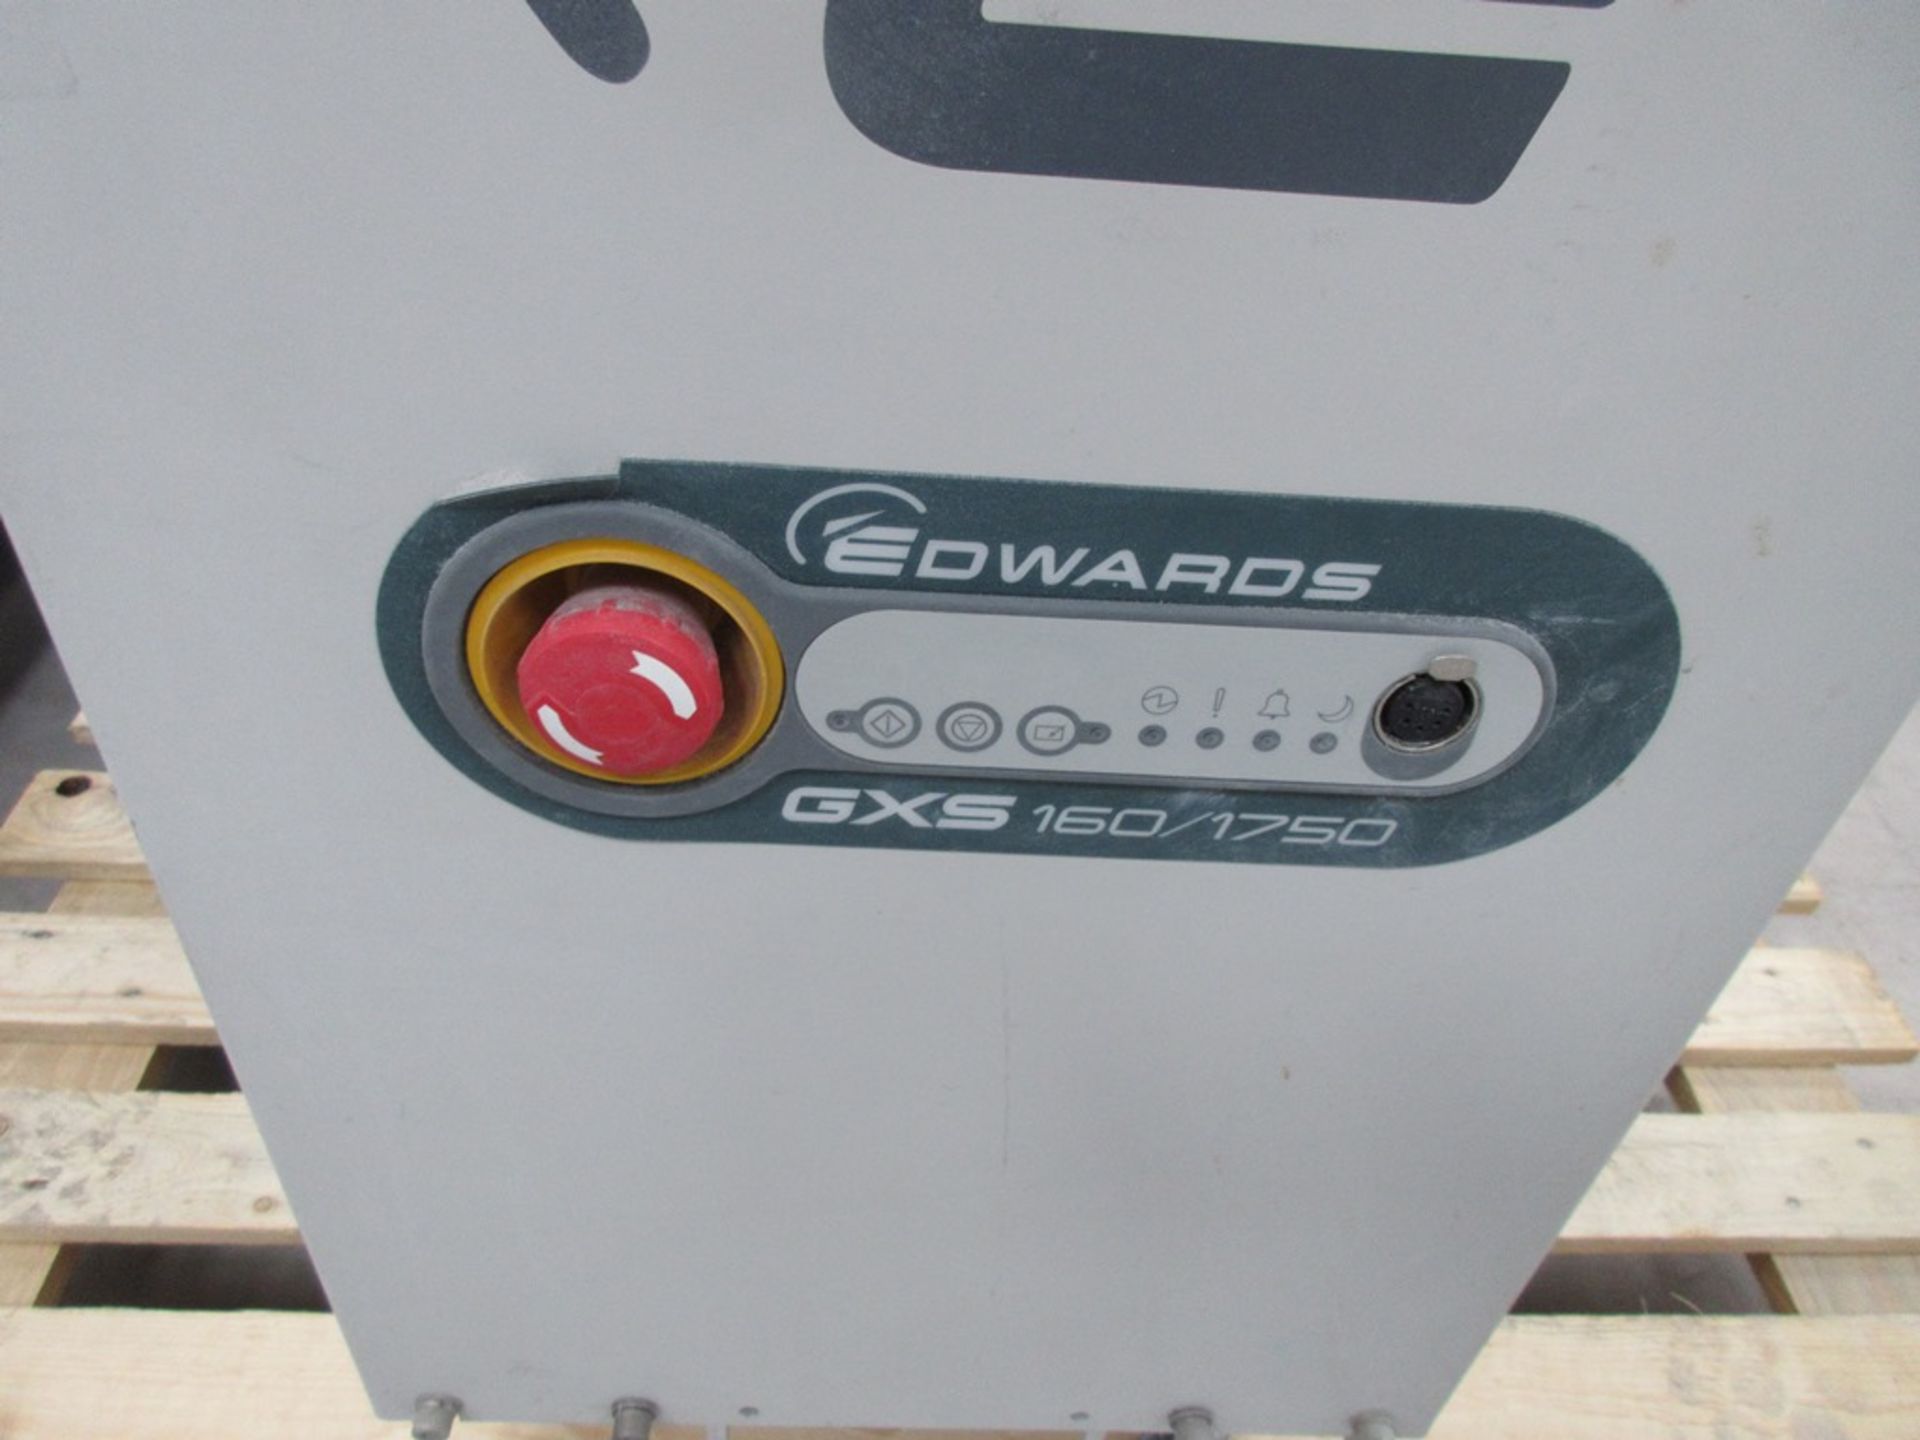 Edwards GX3 160/1750 vacuum pump, serial no. 106354909 (2010) - Image 2 of 3